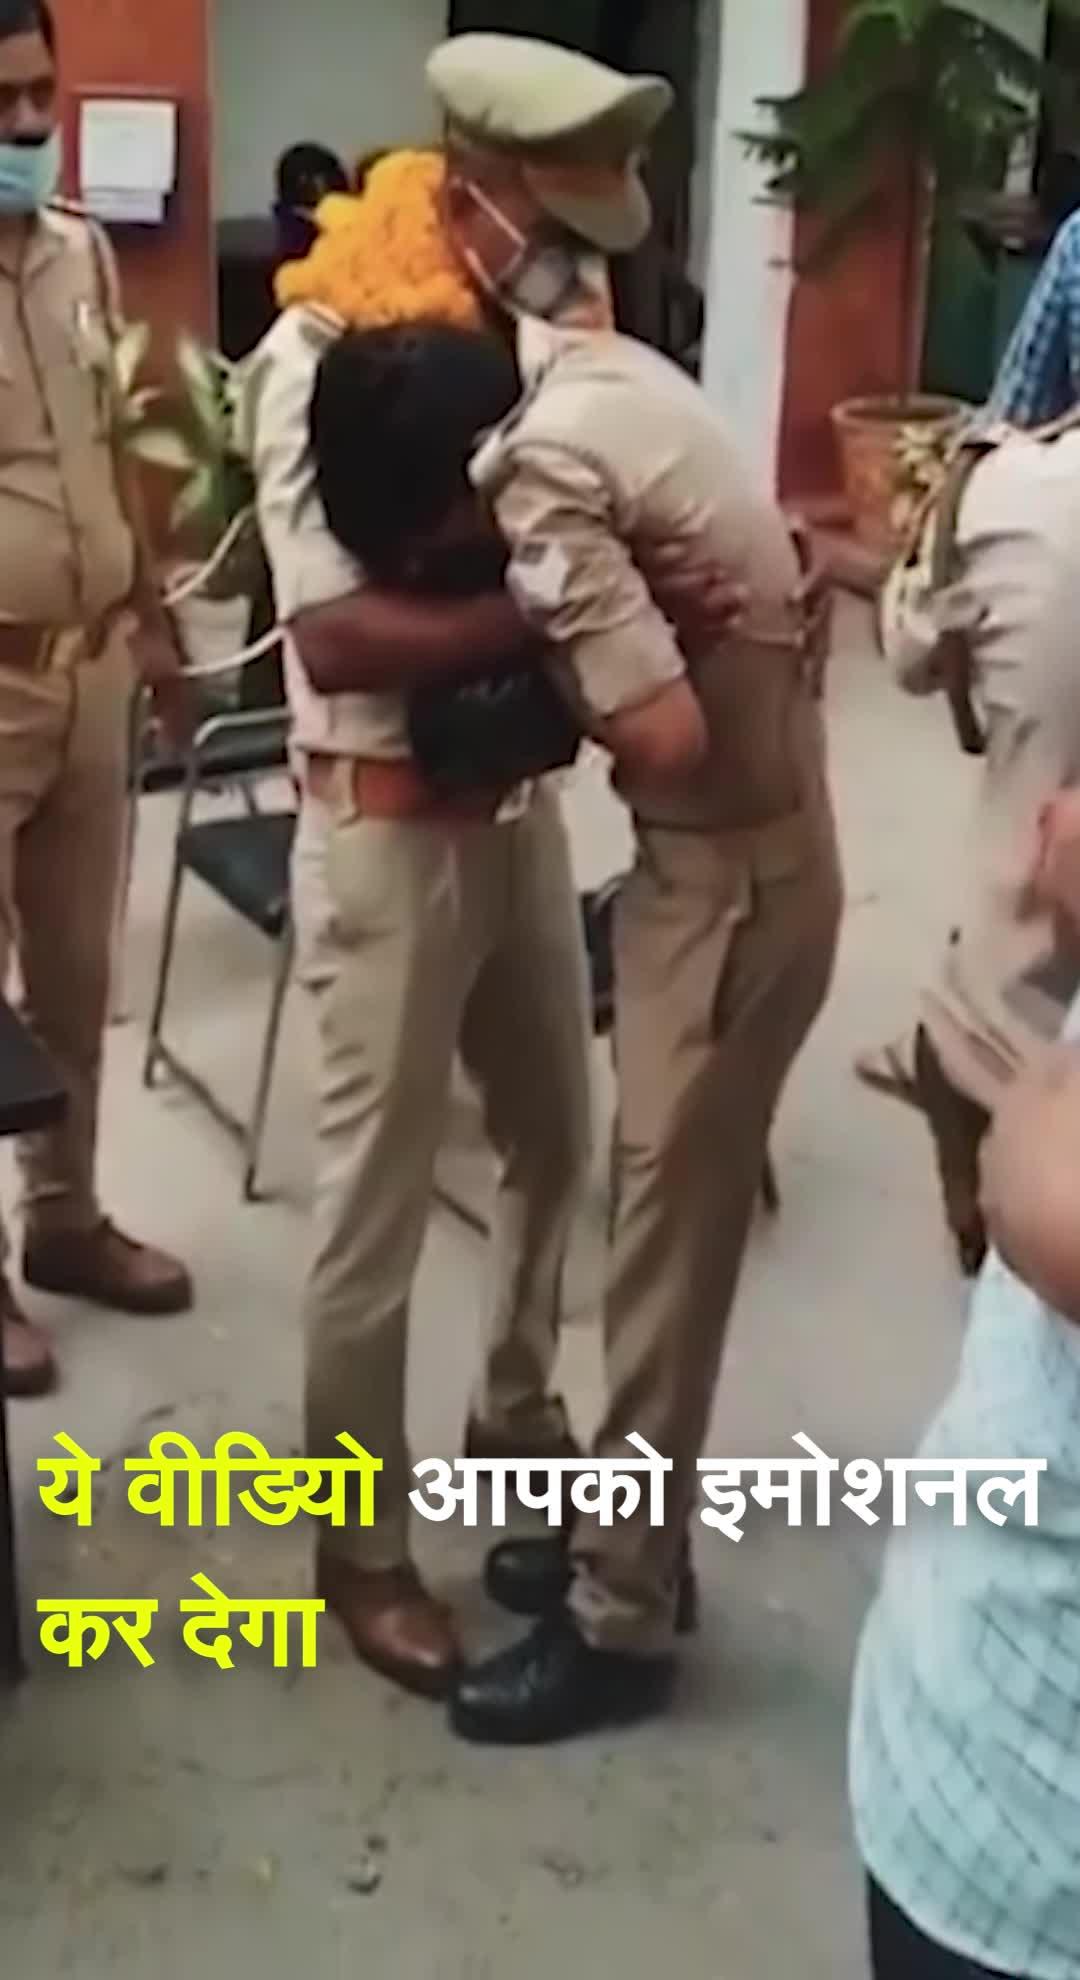 Viral Video: UP के Varanasi में एक सिपाही अपने सिनियर की विदाई में फूट-फूट कर रोने लगा